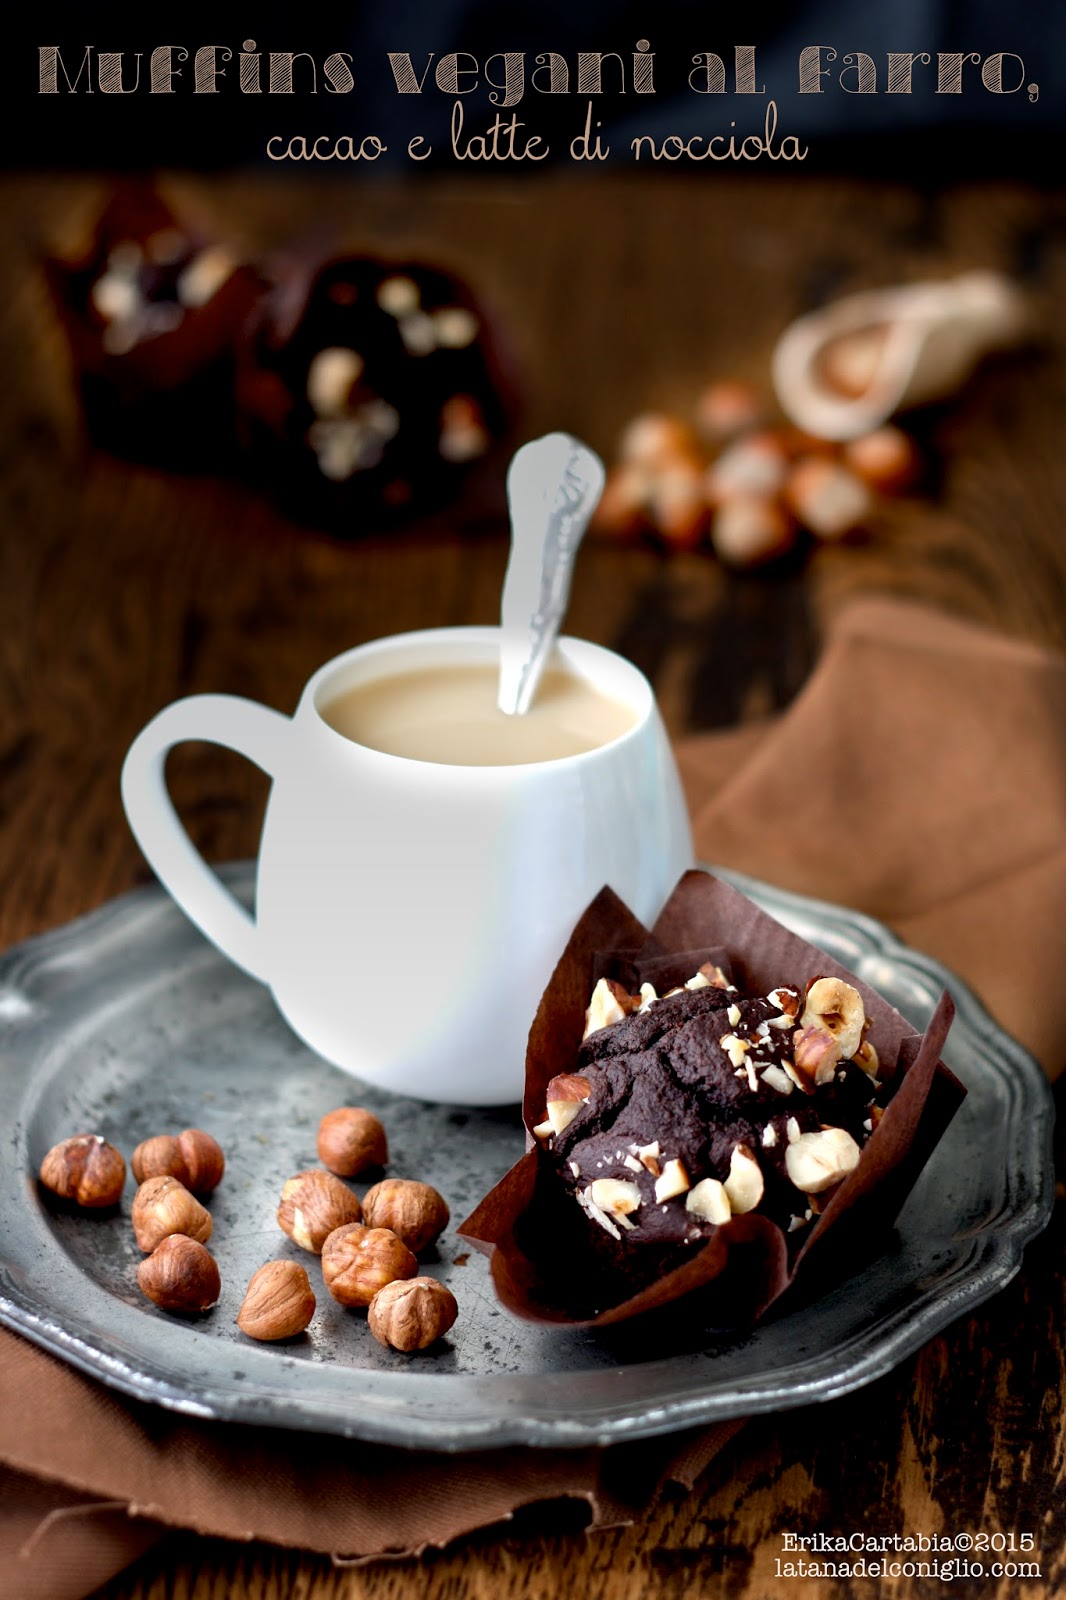 muffins vegani al farro, cacao e latte di nocciola